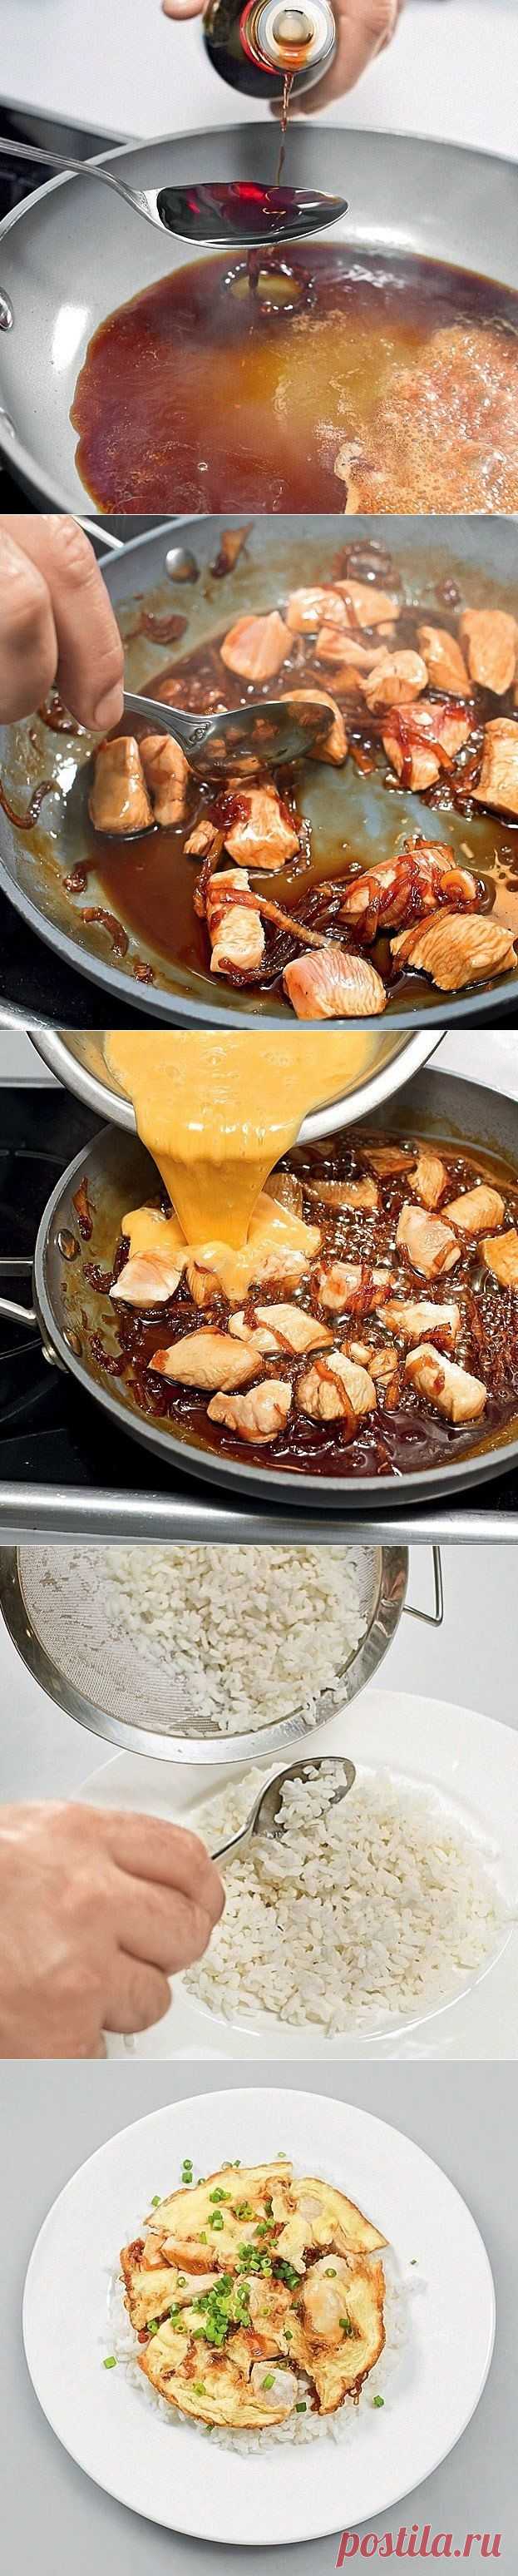 Как приготовить оякодон (японский омлет с рисом и курицей) - рецепт, ингридиенты и фотографии